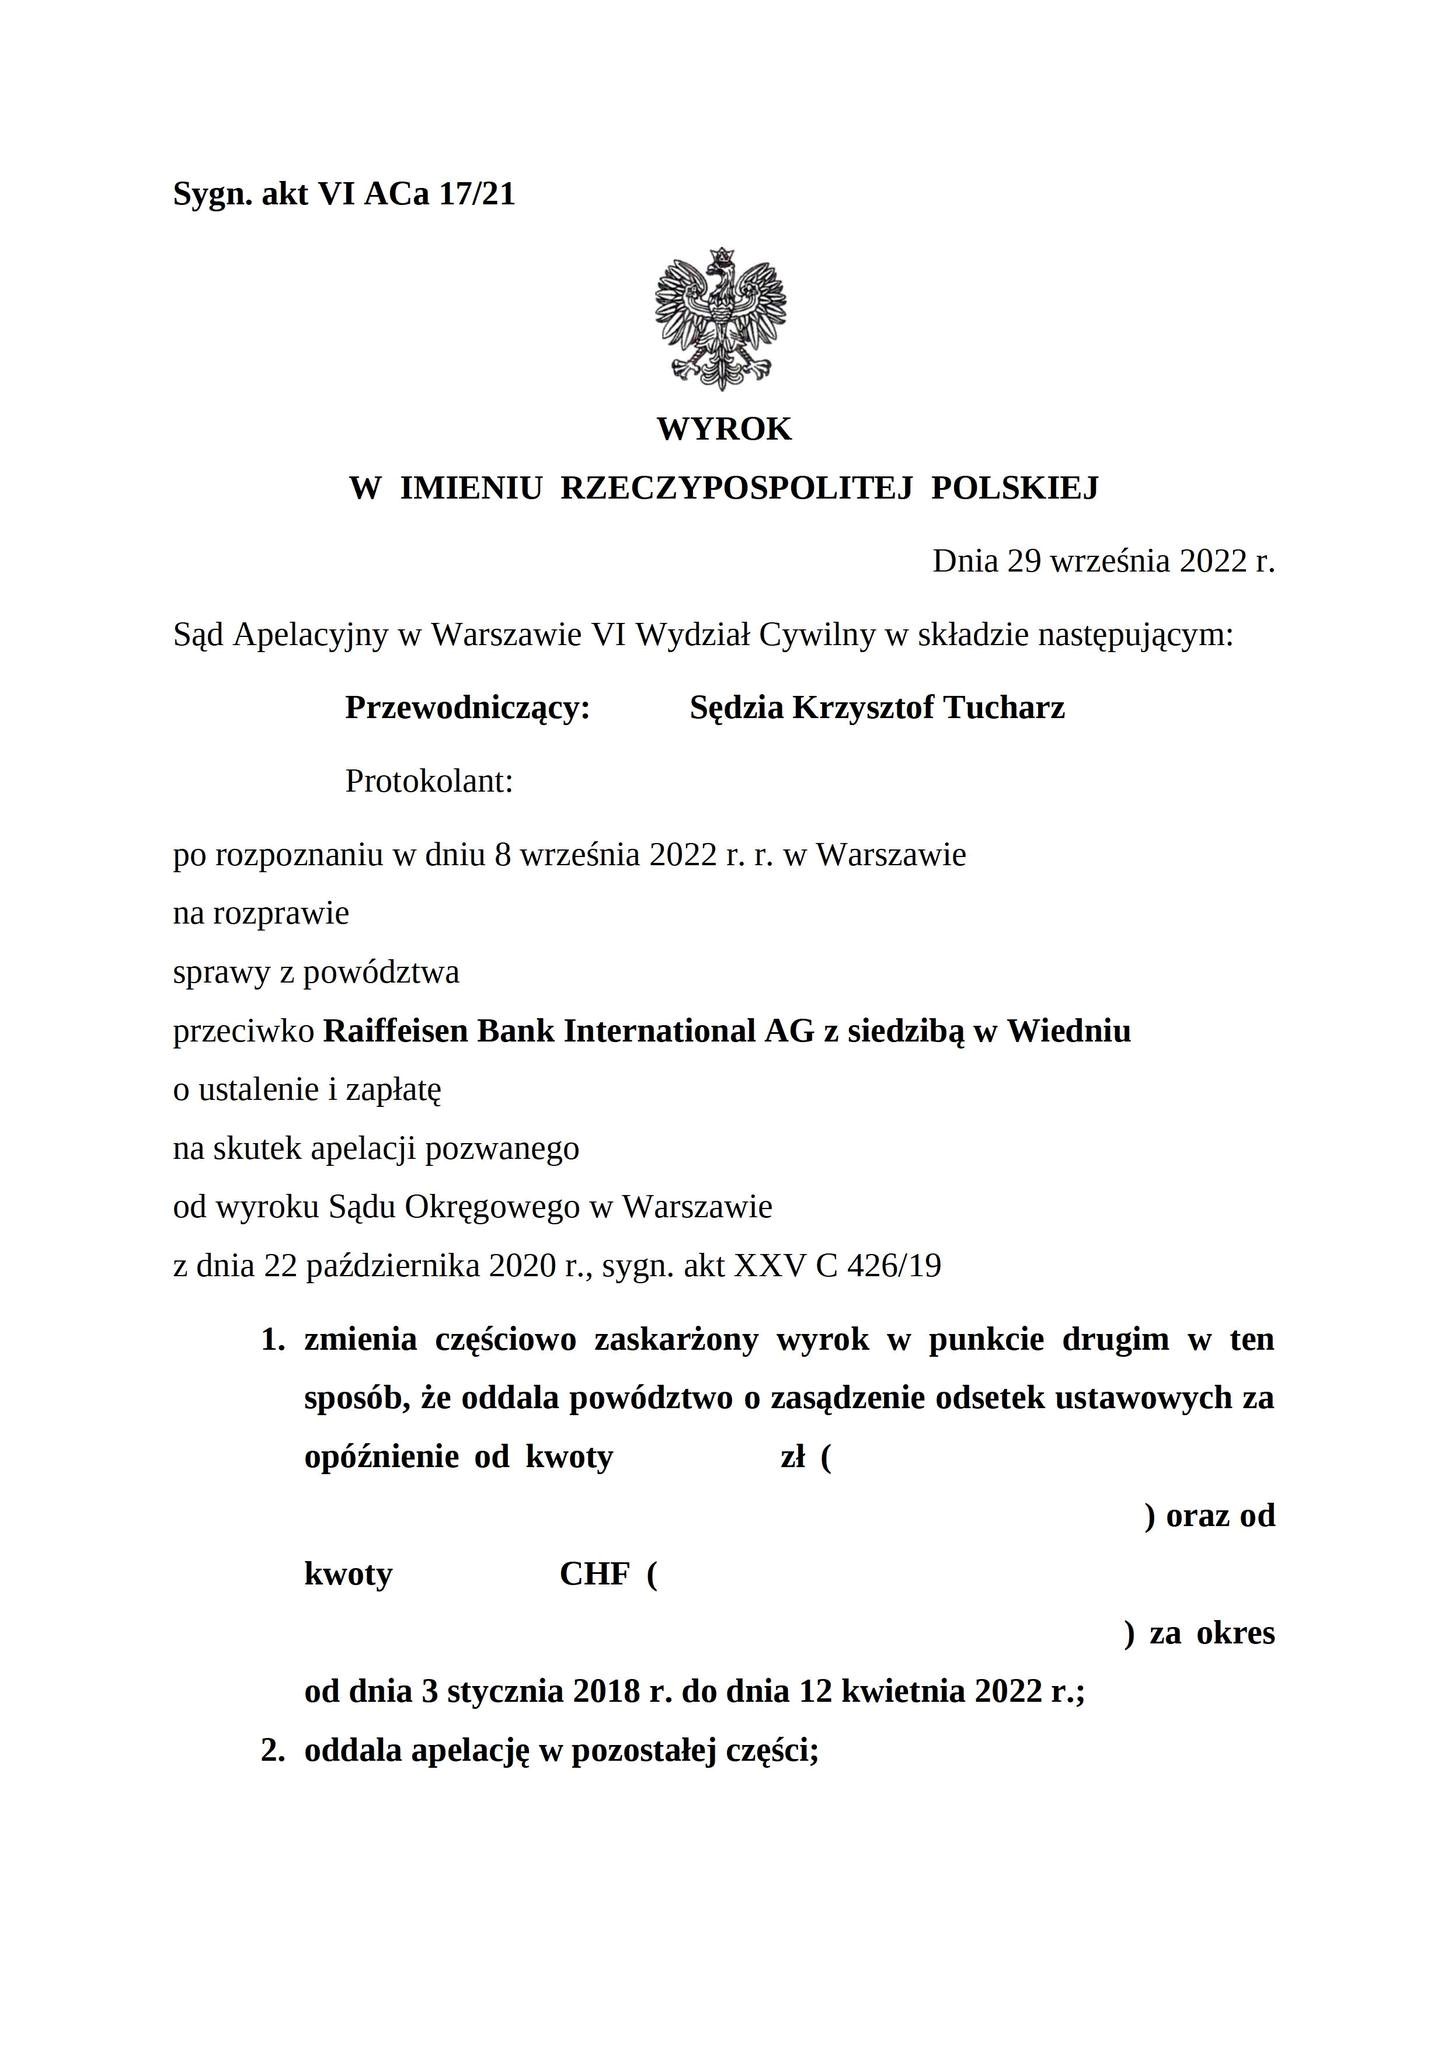 Wyrok Sądu Apelacyjnego w Warszawie z dnia 29.09.2022 r., sygn. akt VI ACa 17/21